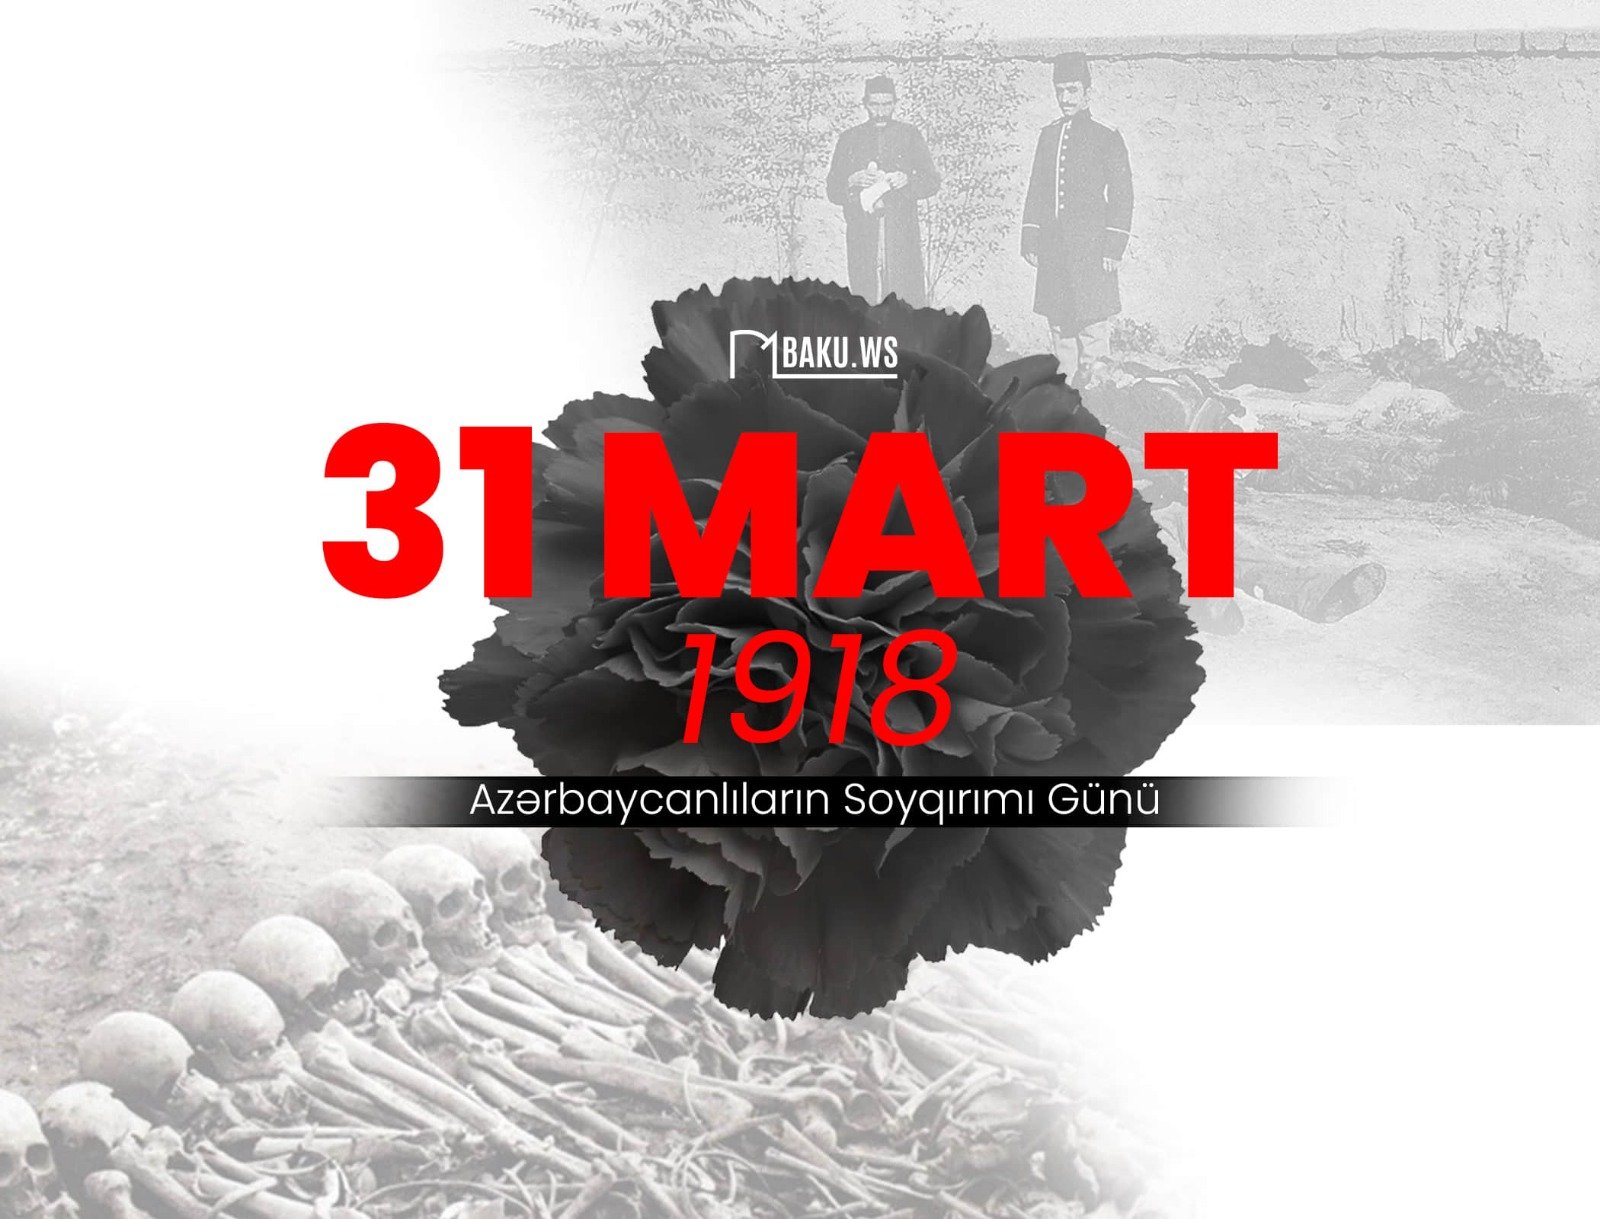 31 Mart – Azərbaycanlıların Soyqırımı Günüdür